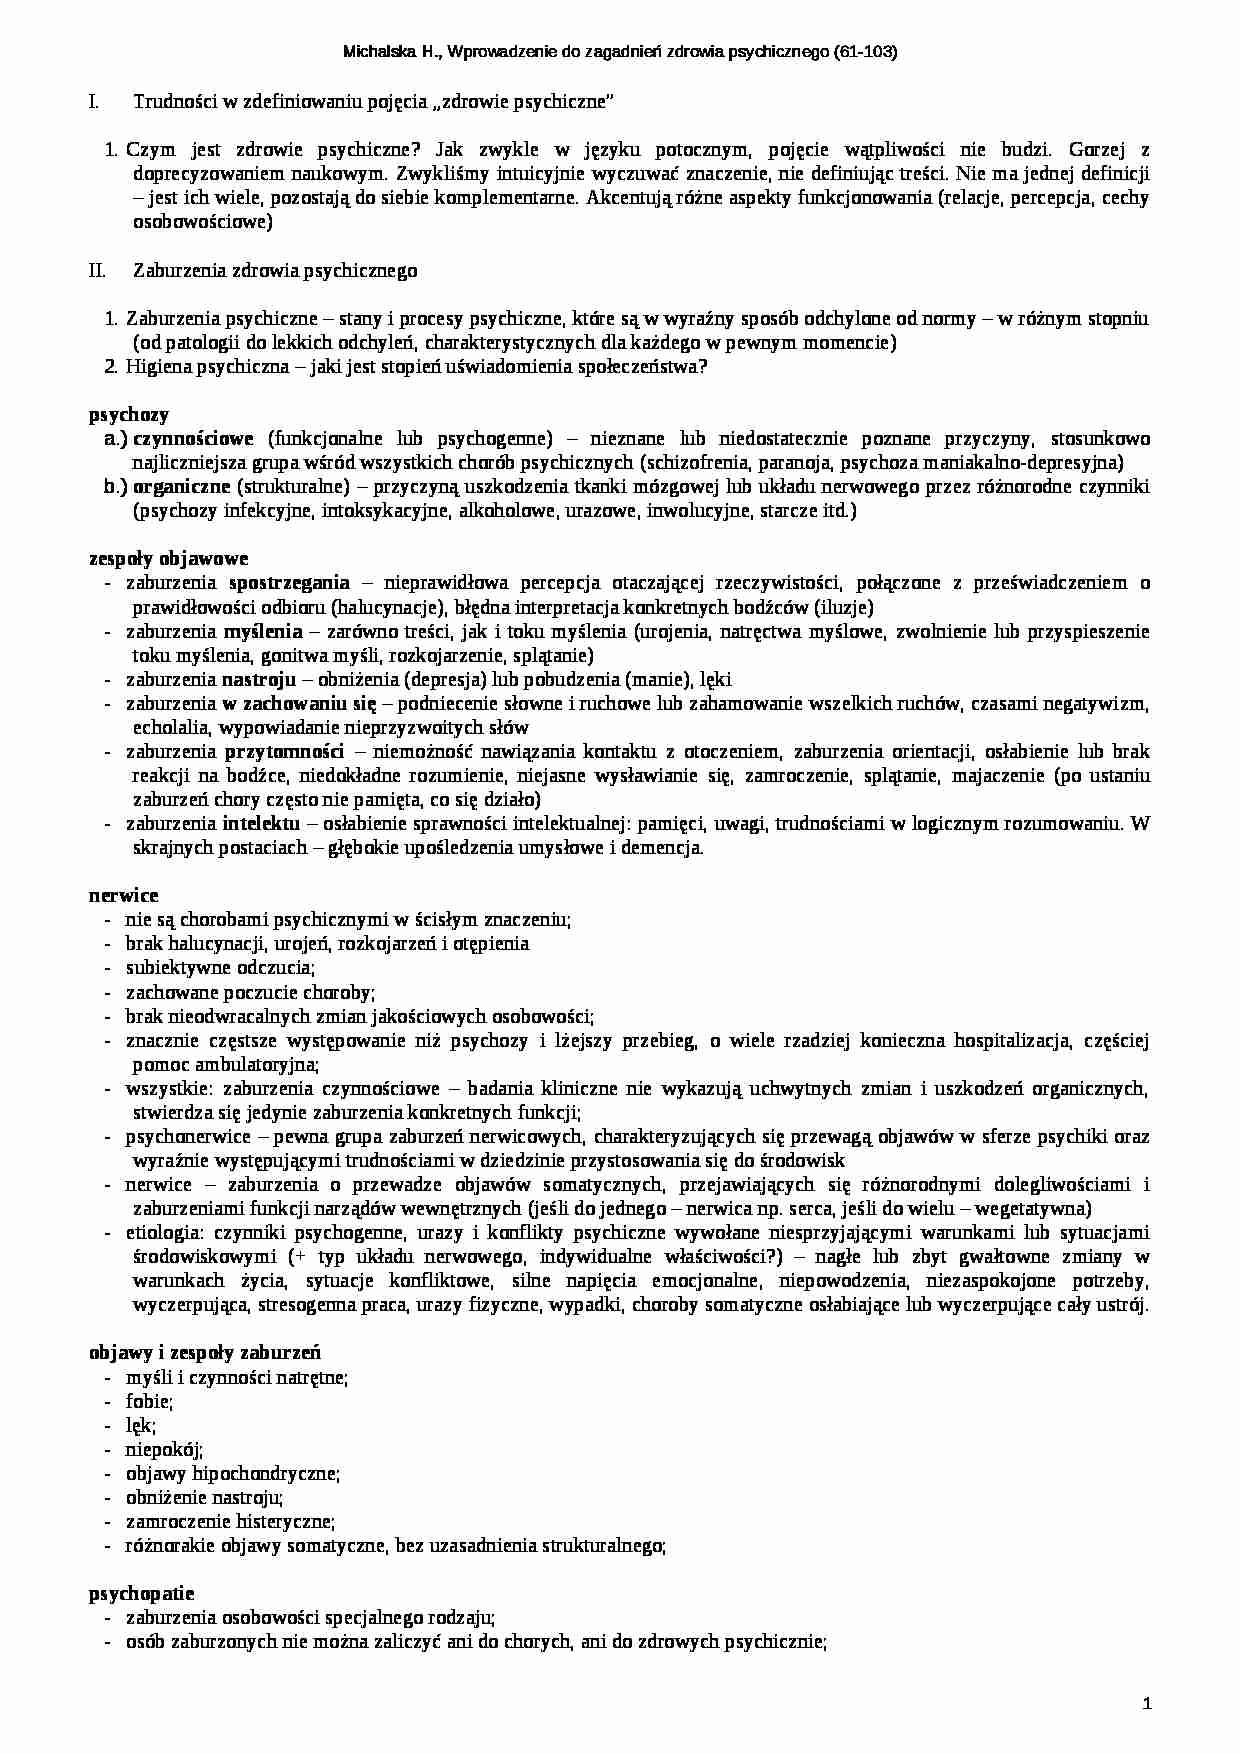 Michalska - Wpr. do zagadnień zdrowia psychicznego - strona 1